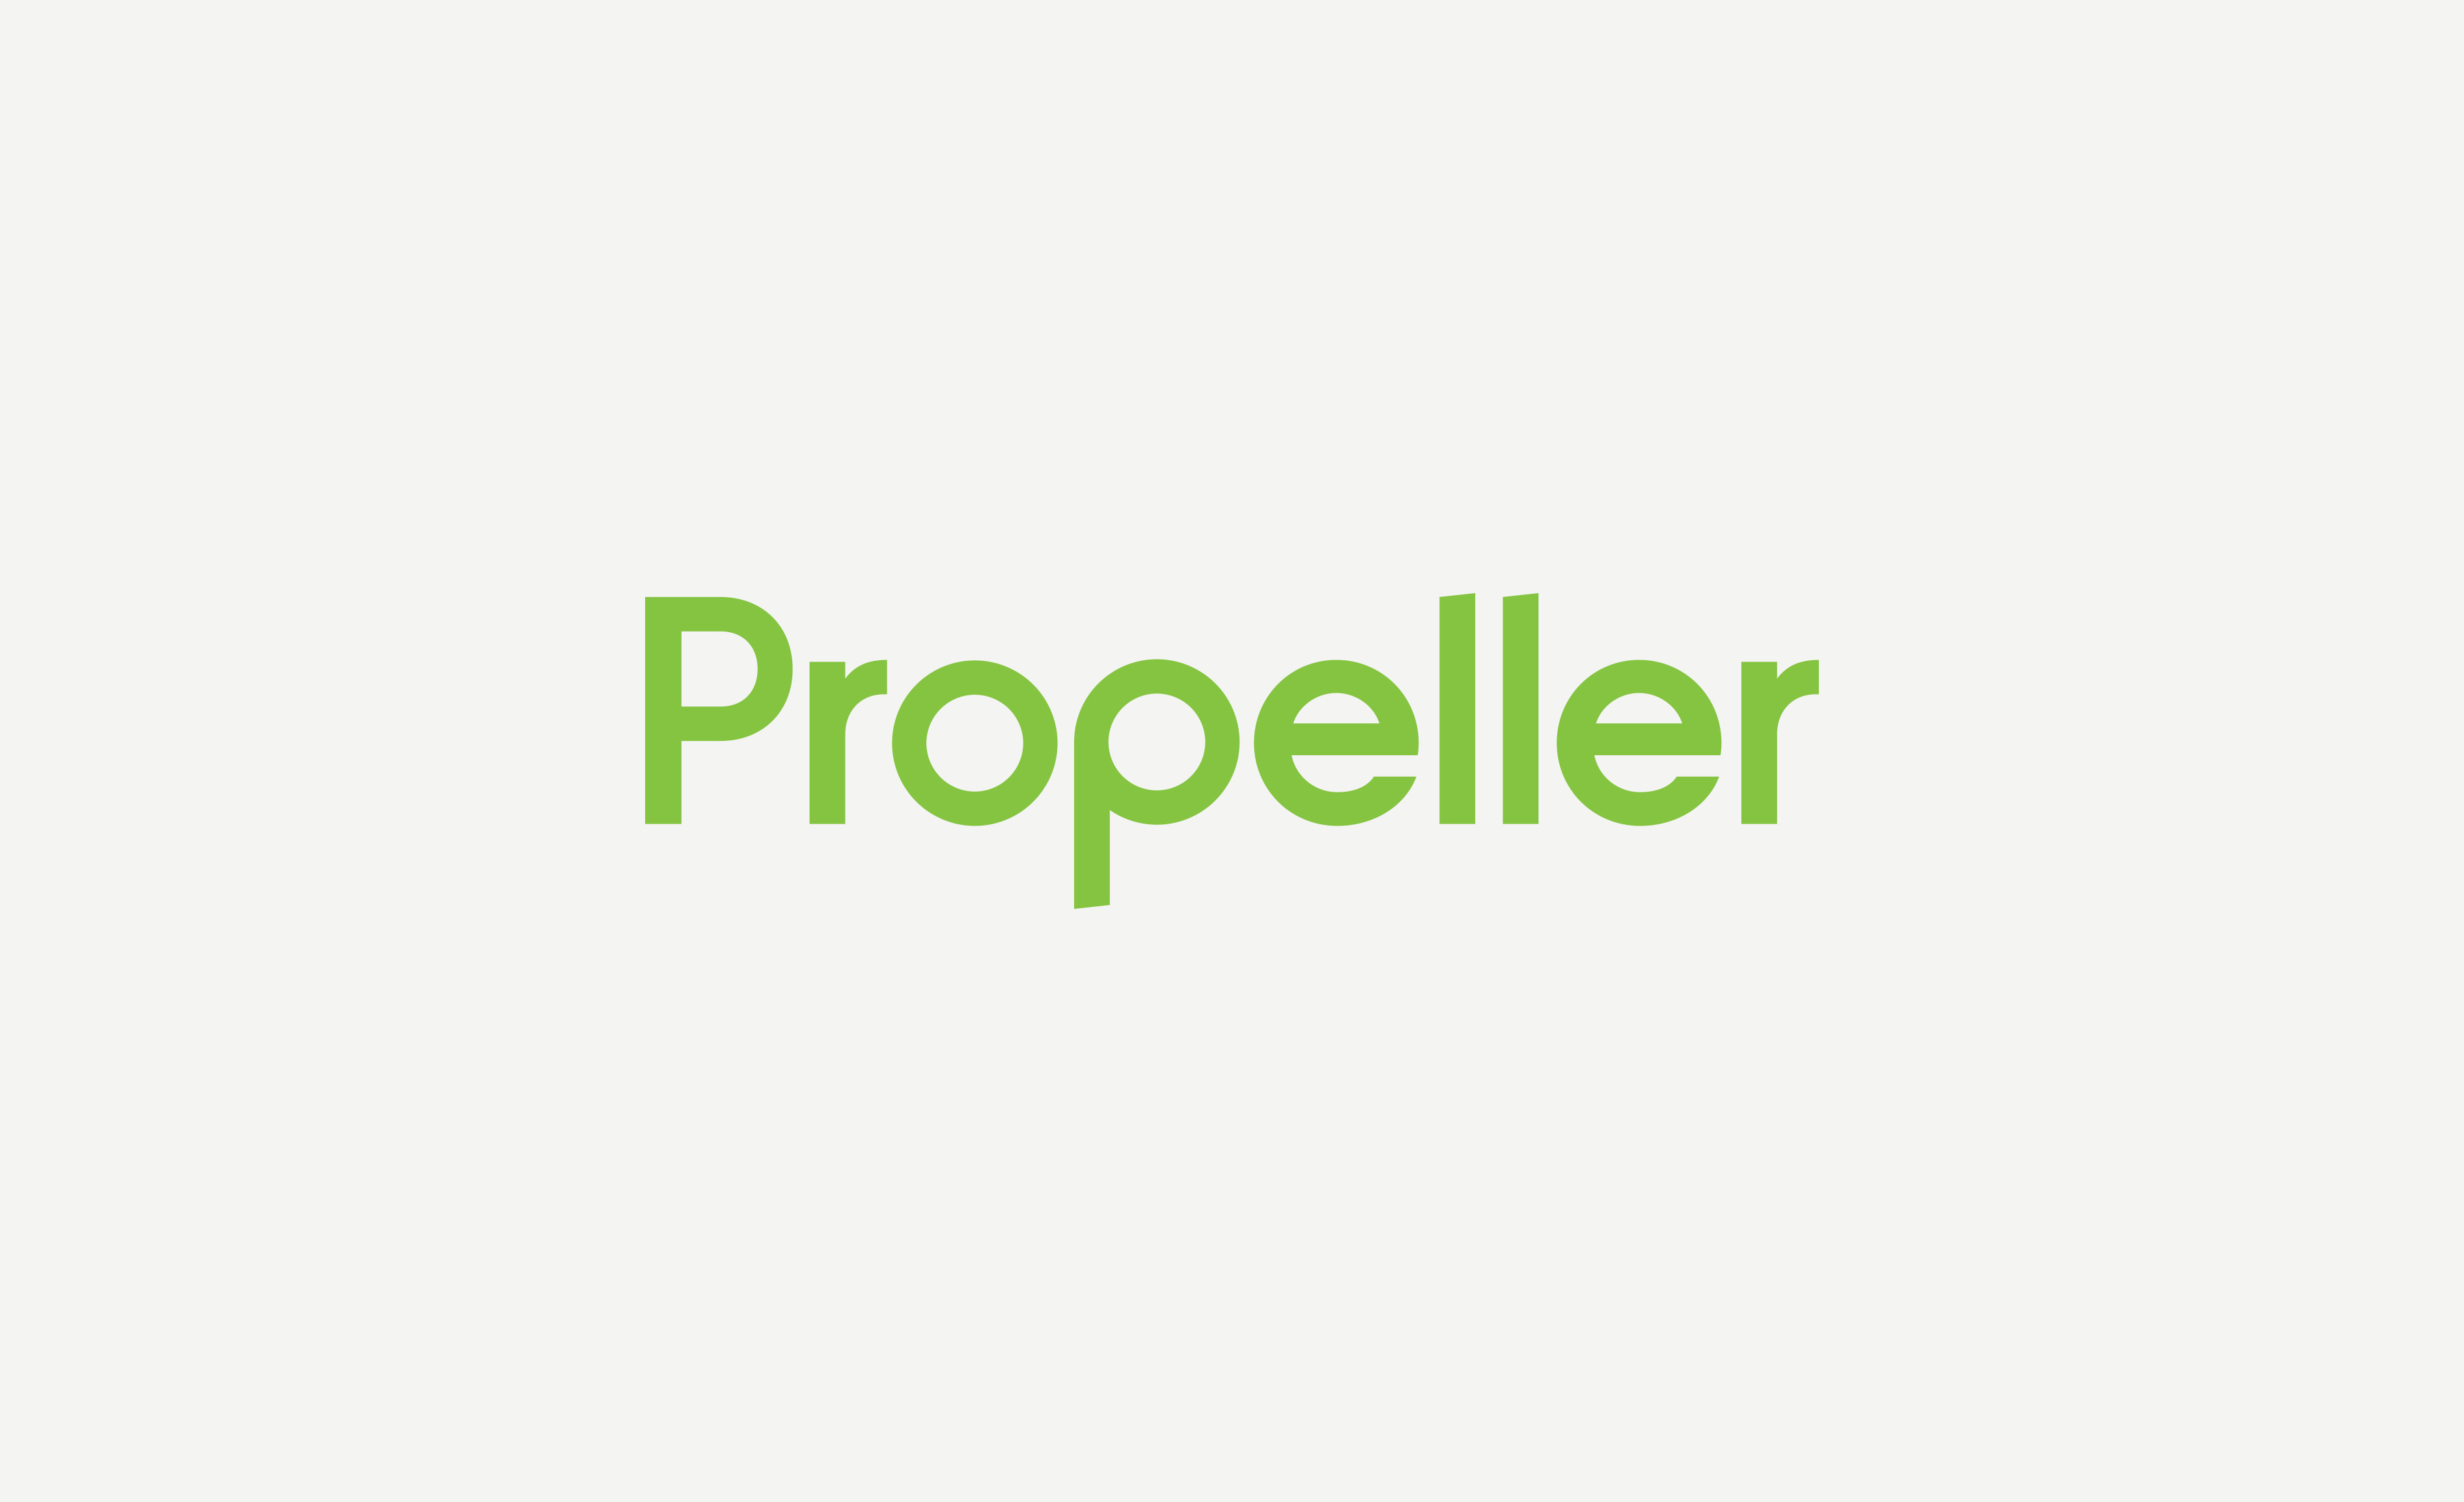 Propeller wordmark logo